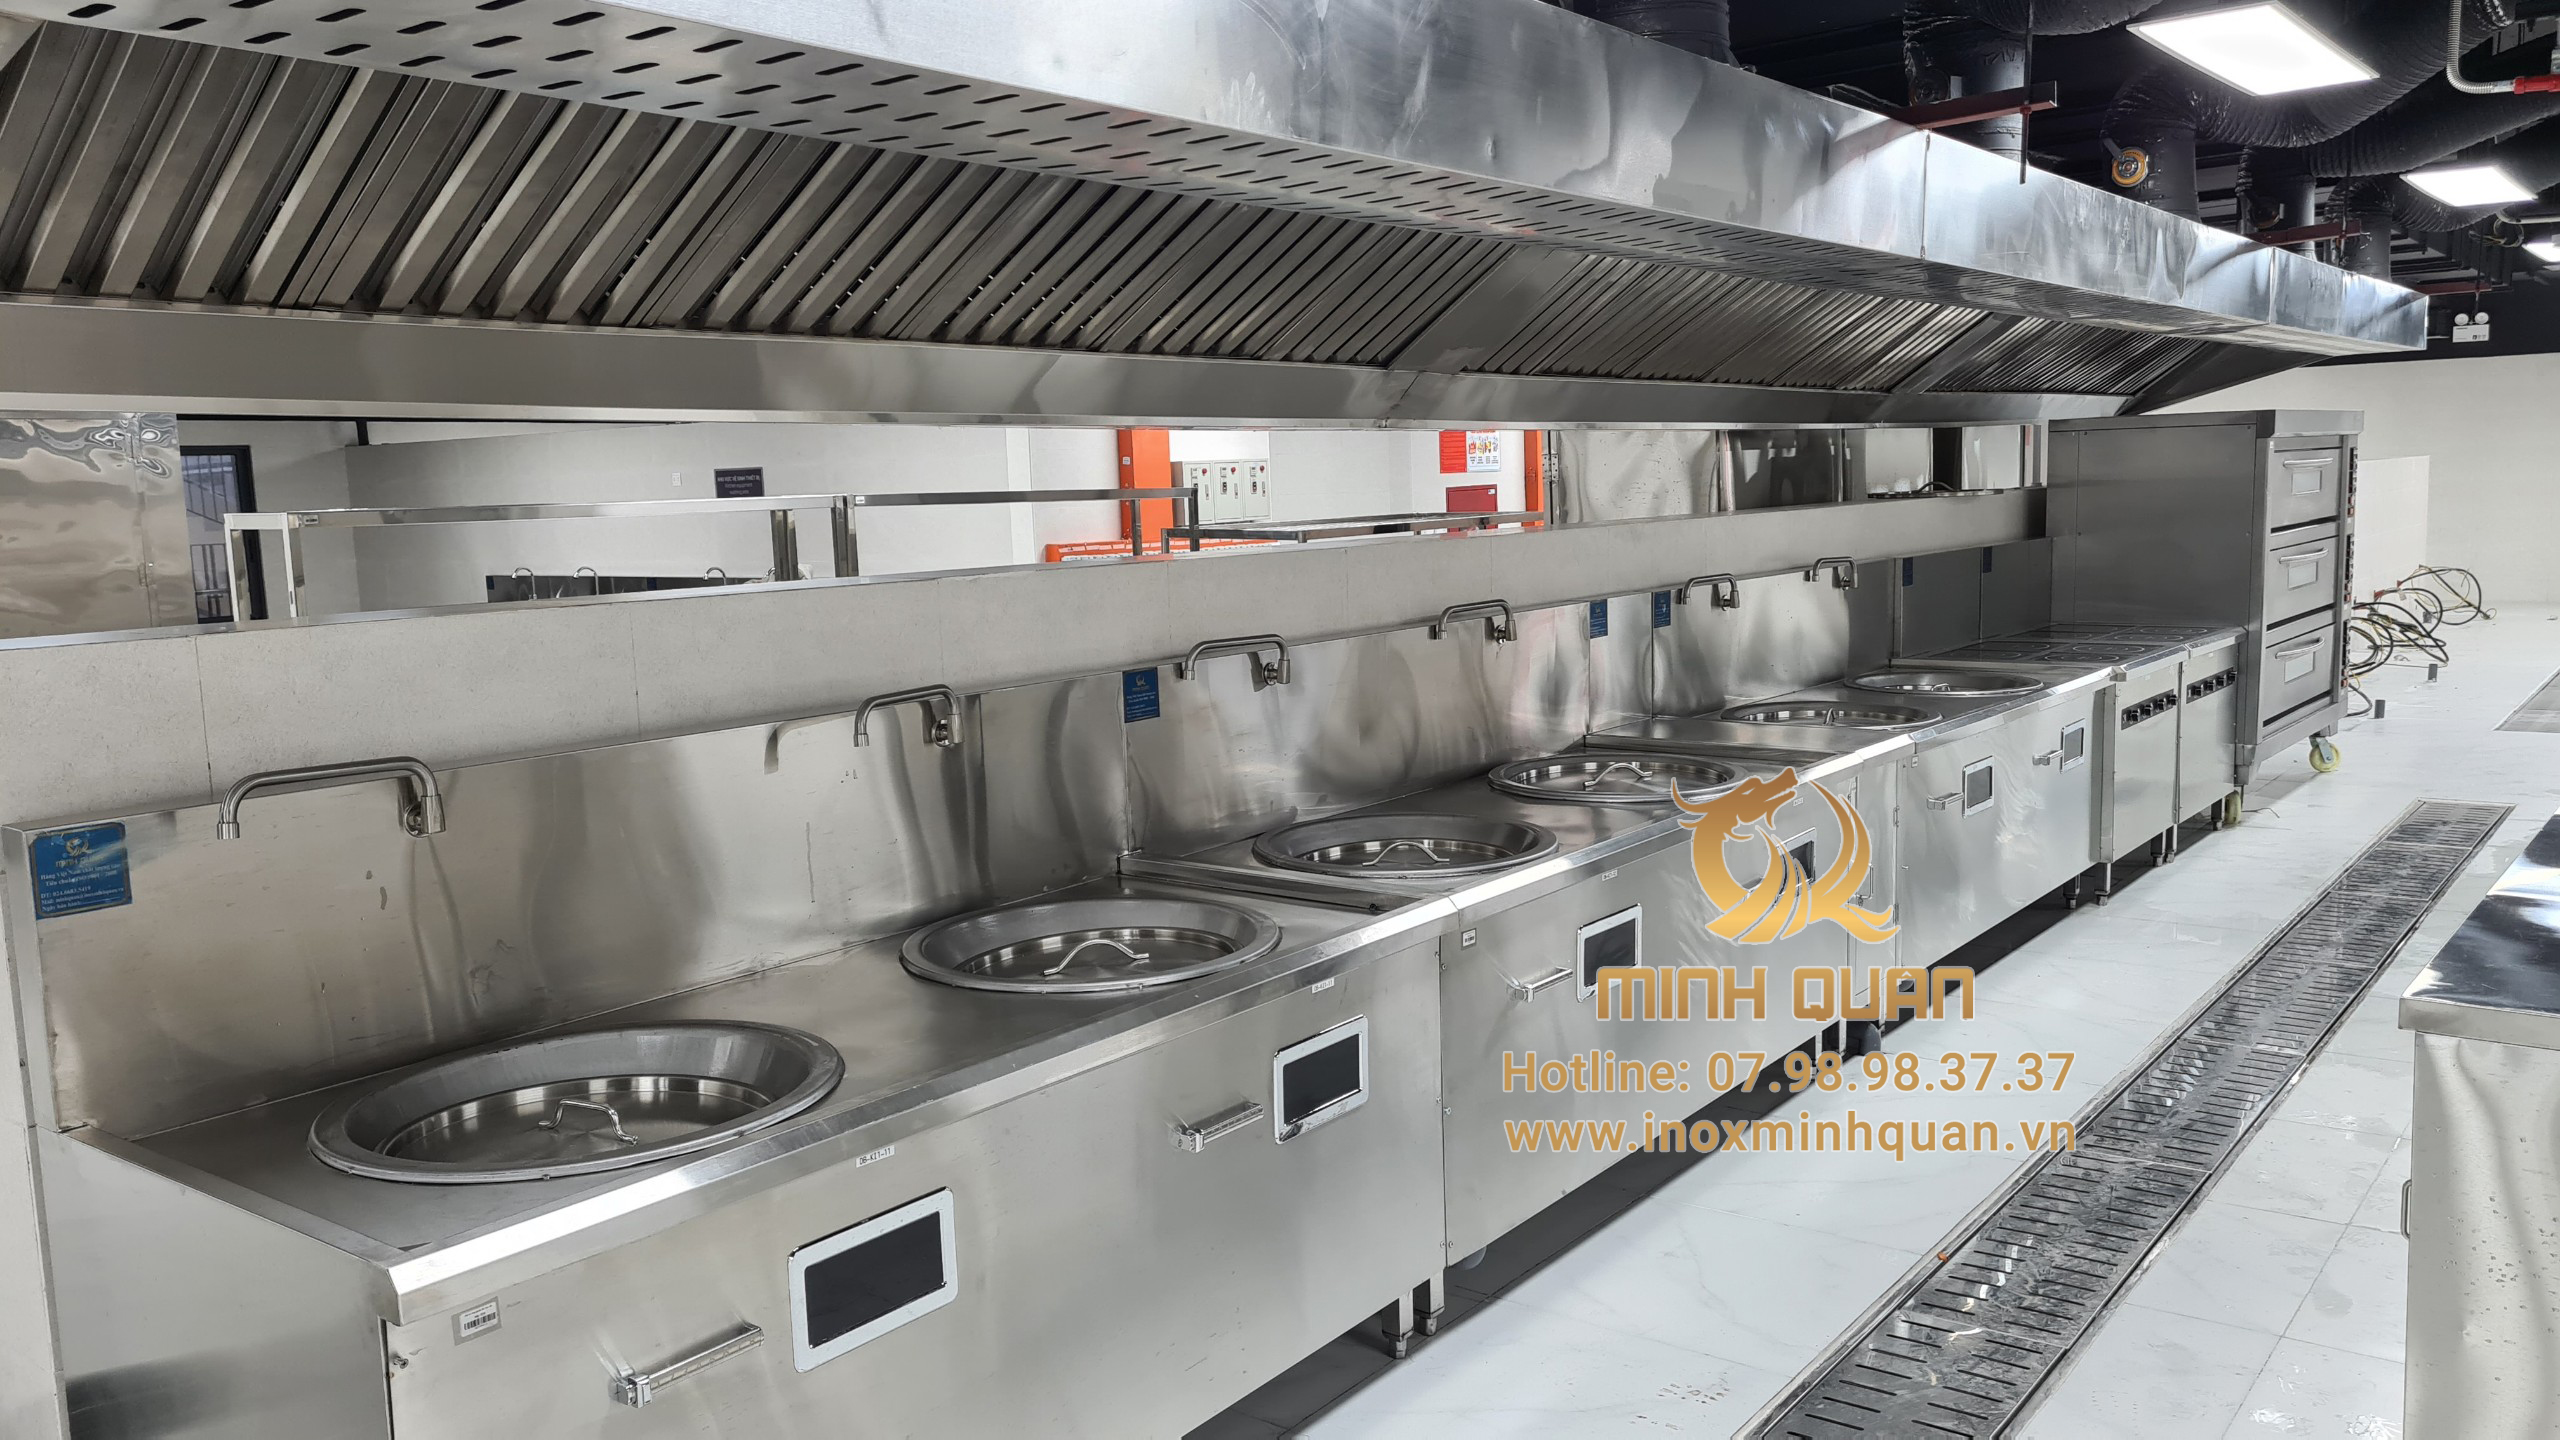 Inox Minh Quân - đơn vị cung cấp các mẫu bếp nhà hàng khách sạn nhập khẩu chính hãng